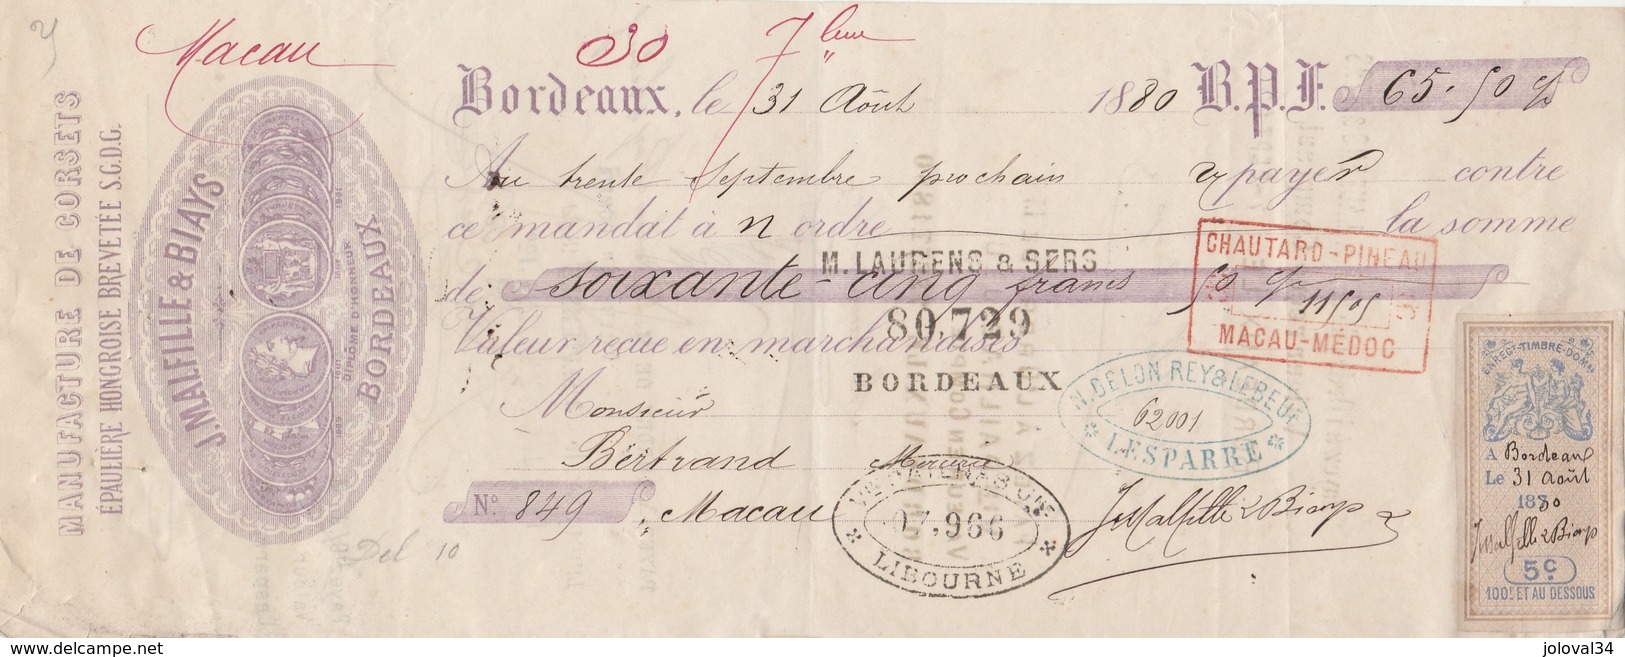 Lettre Change Avec Timbre Fiscal 31/8/1880 MALFILLE & BIAYS Corsets BORDEAUX Pour  Bertrand Macau Gironde - Lettres De Change